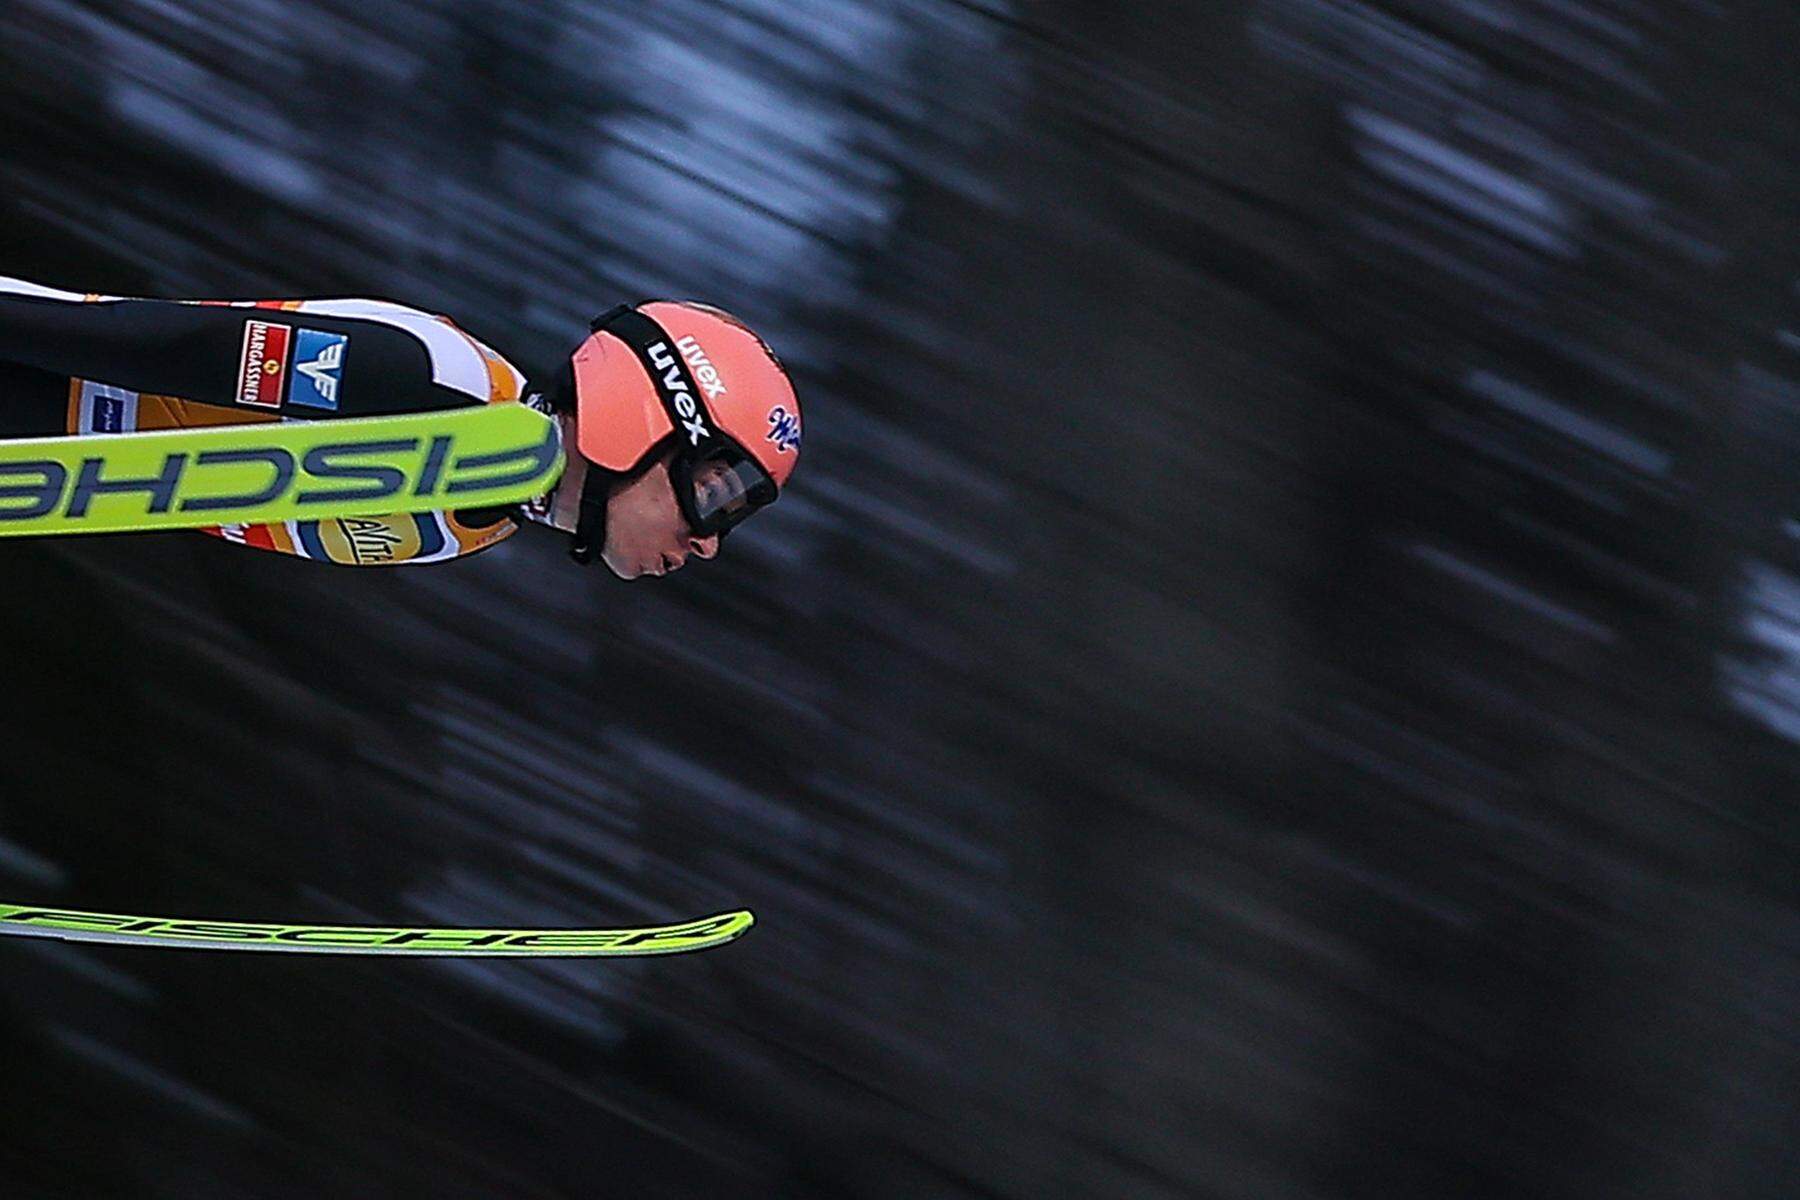 Skispringen in Lahti: Schock für Kraft, Hayböck und Tschofenig vom Podest geweht